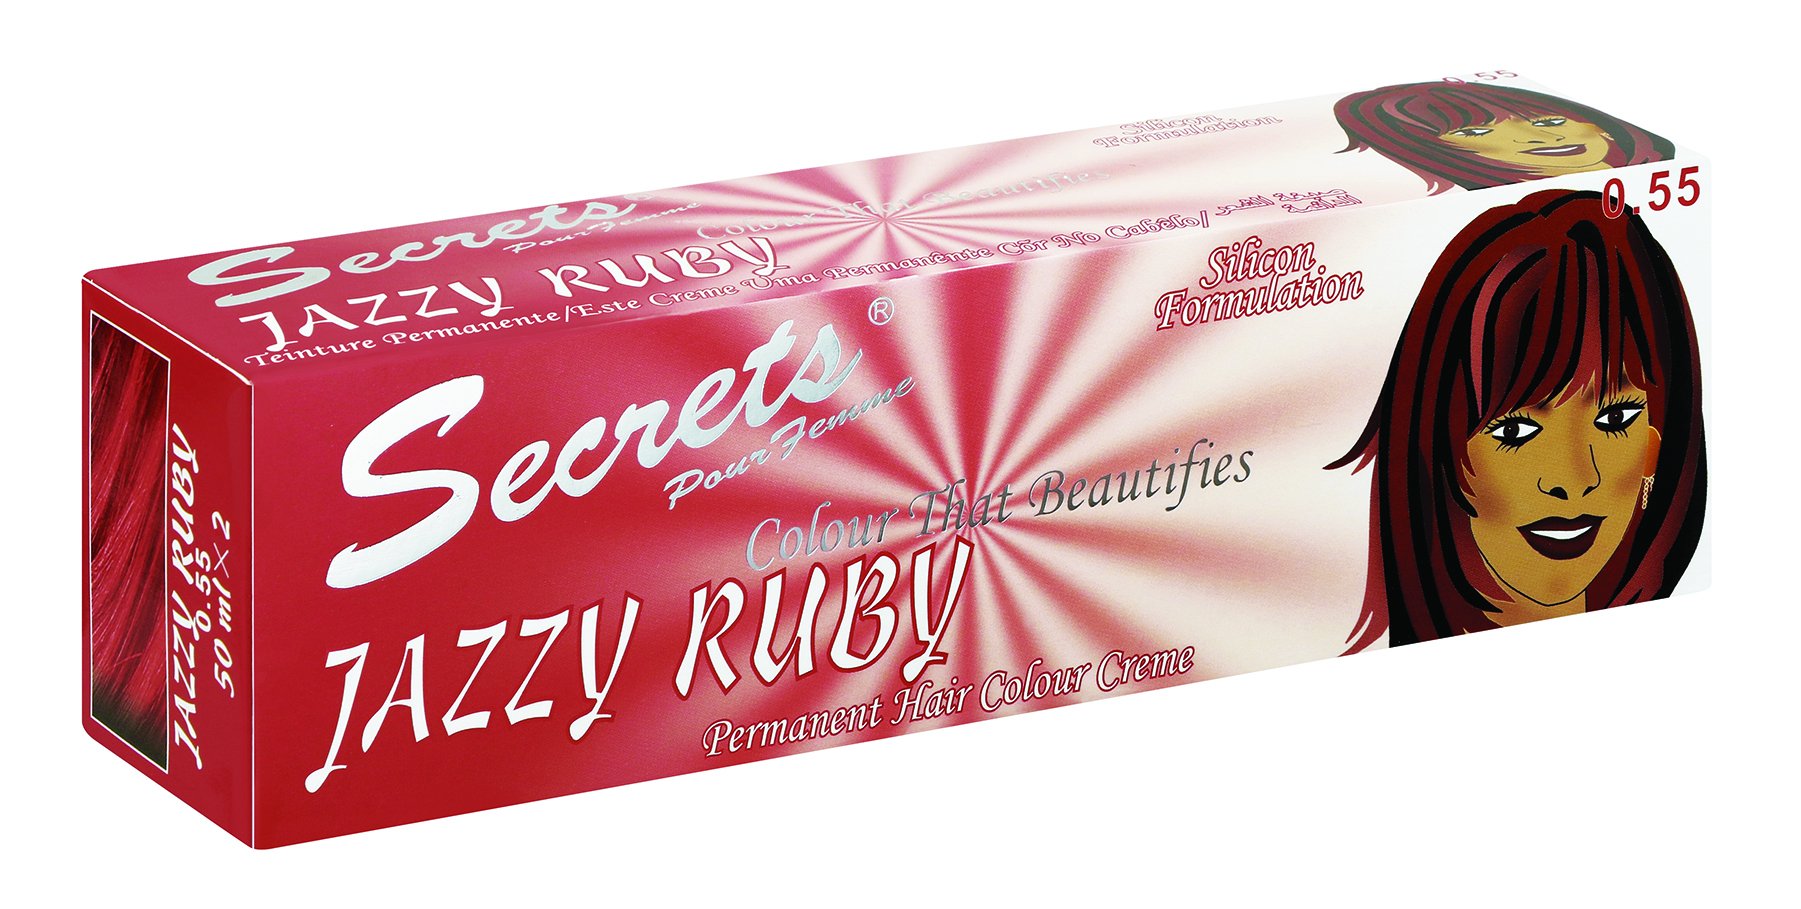 Secrets Jazzy Ruby